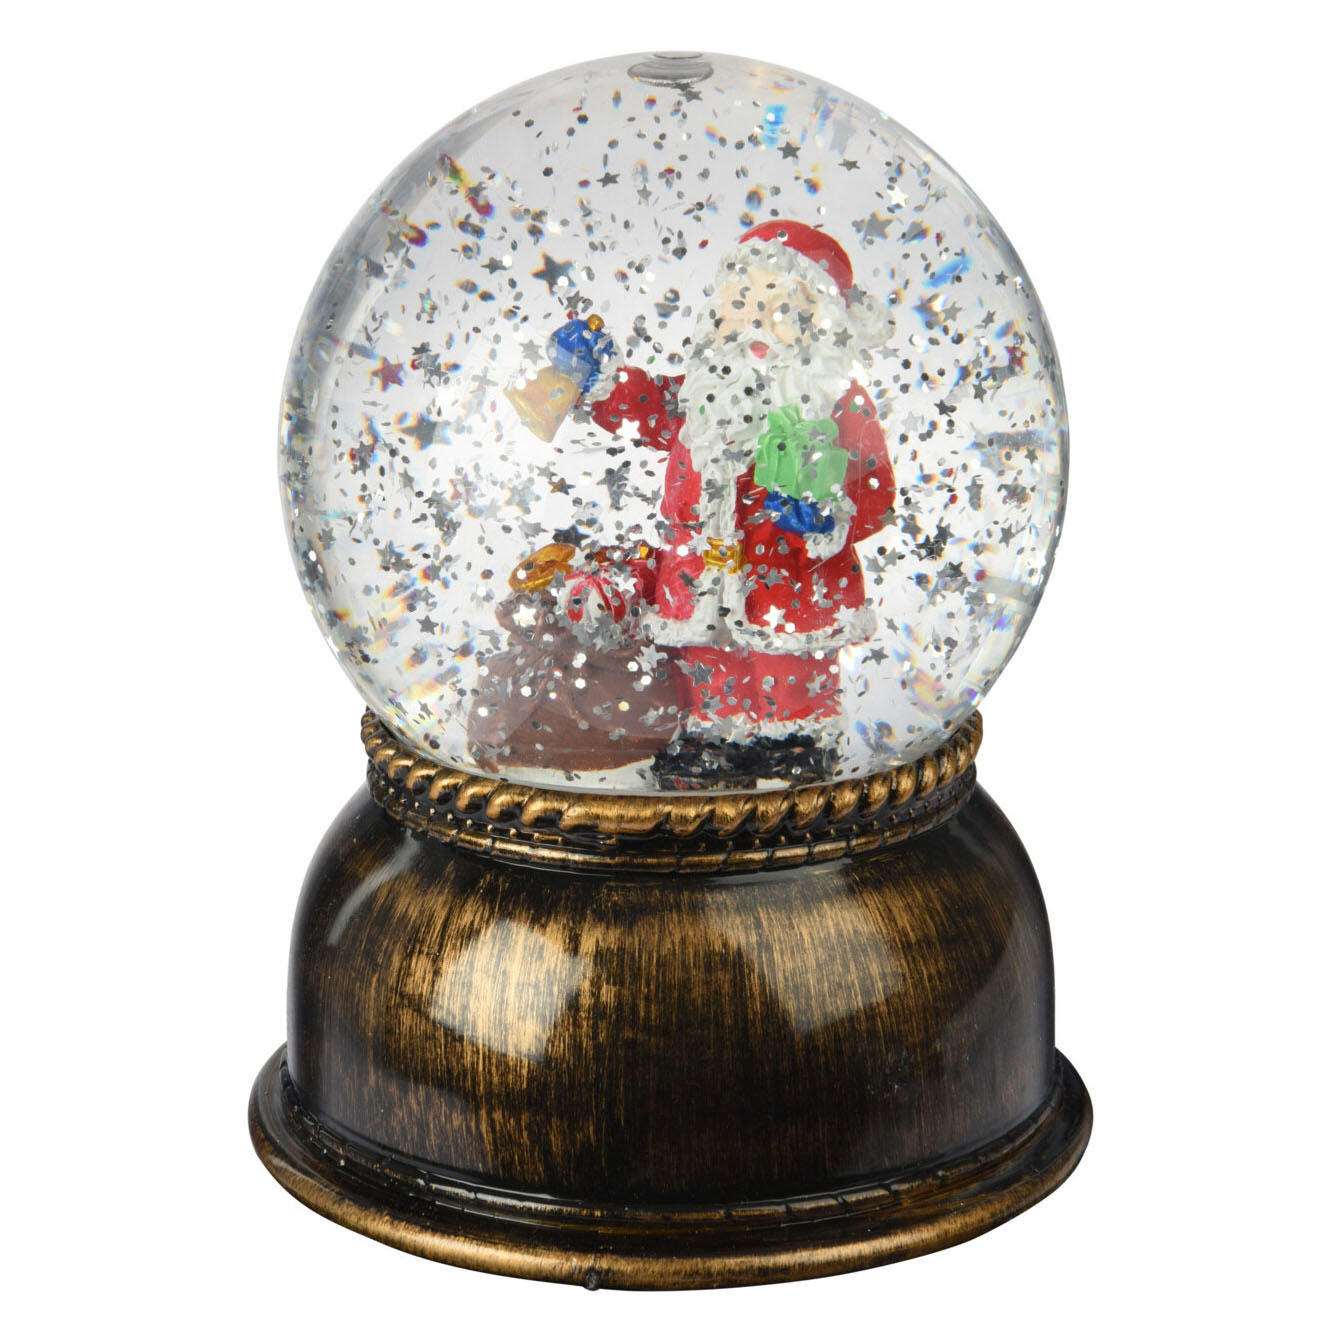 Boule secouante Noël avec LED XL